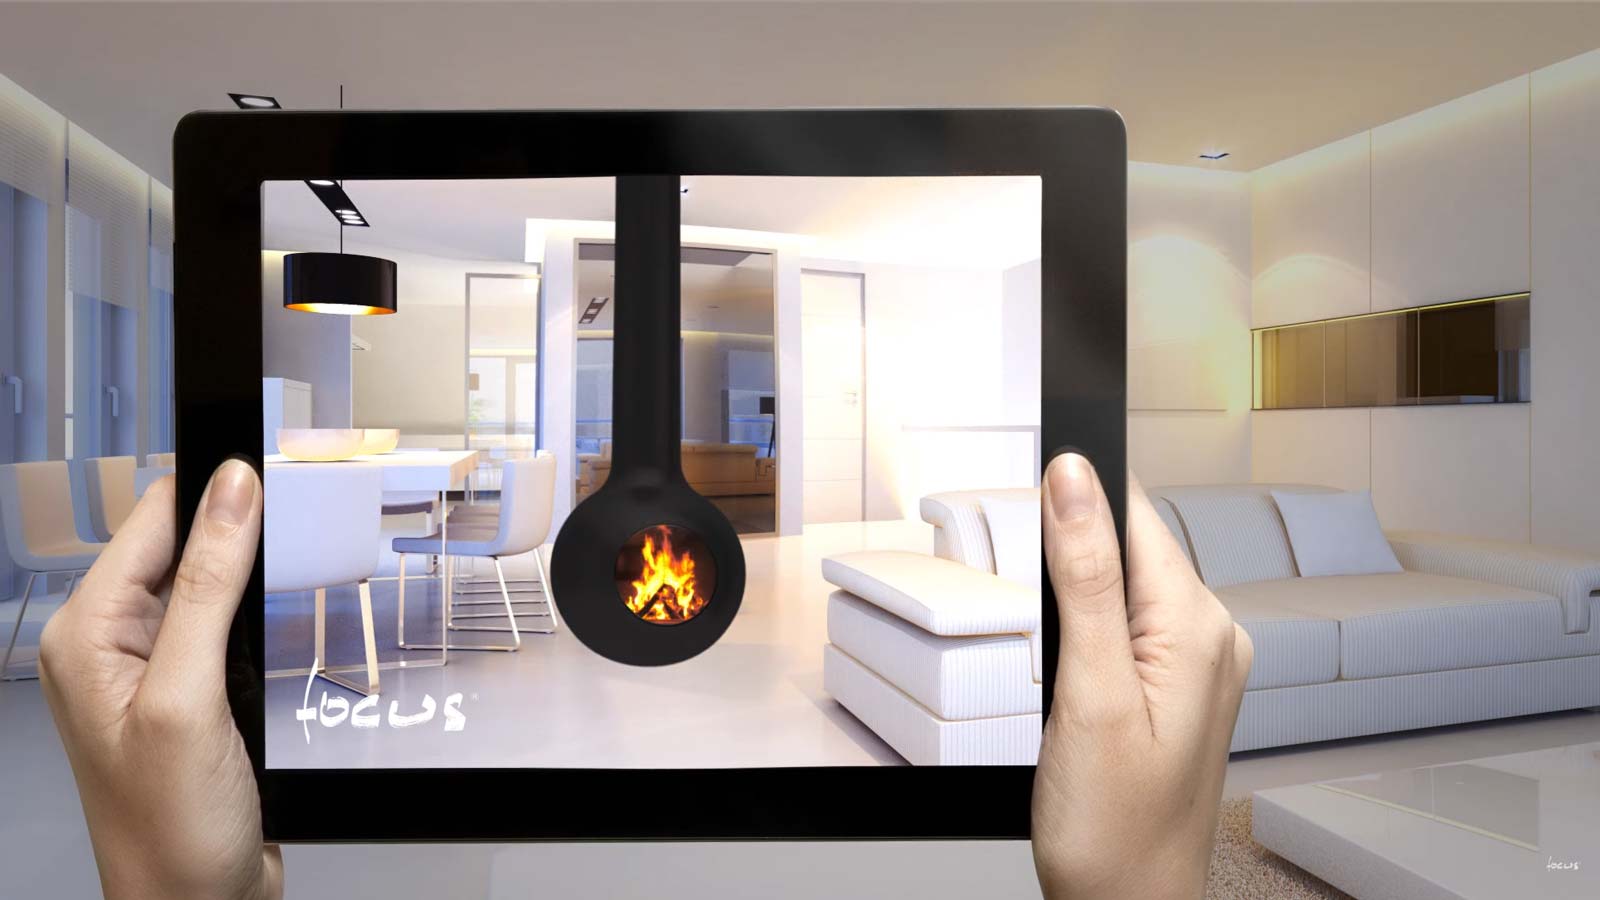 Focus en réalité virtuelle / augmentée chez vous avec Sparte cheminées